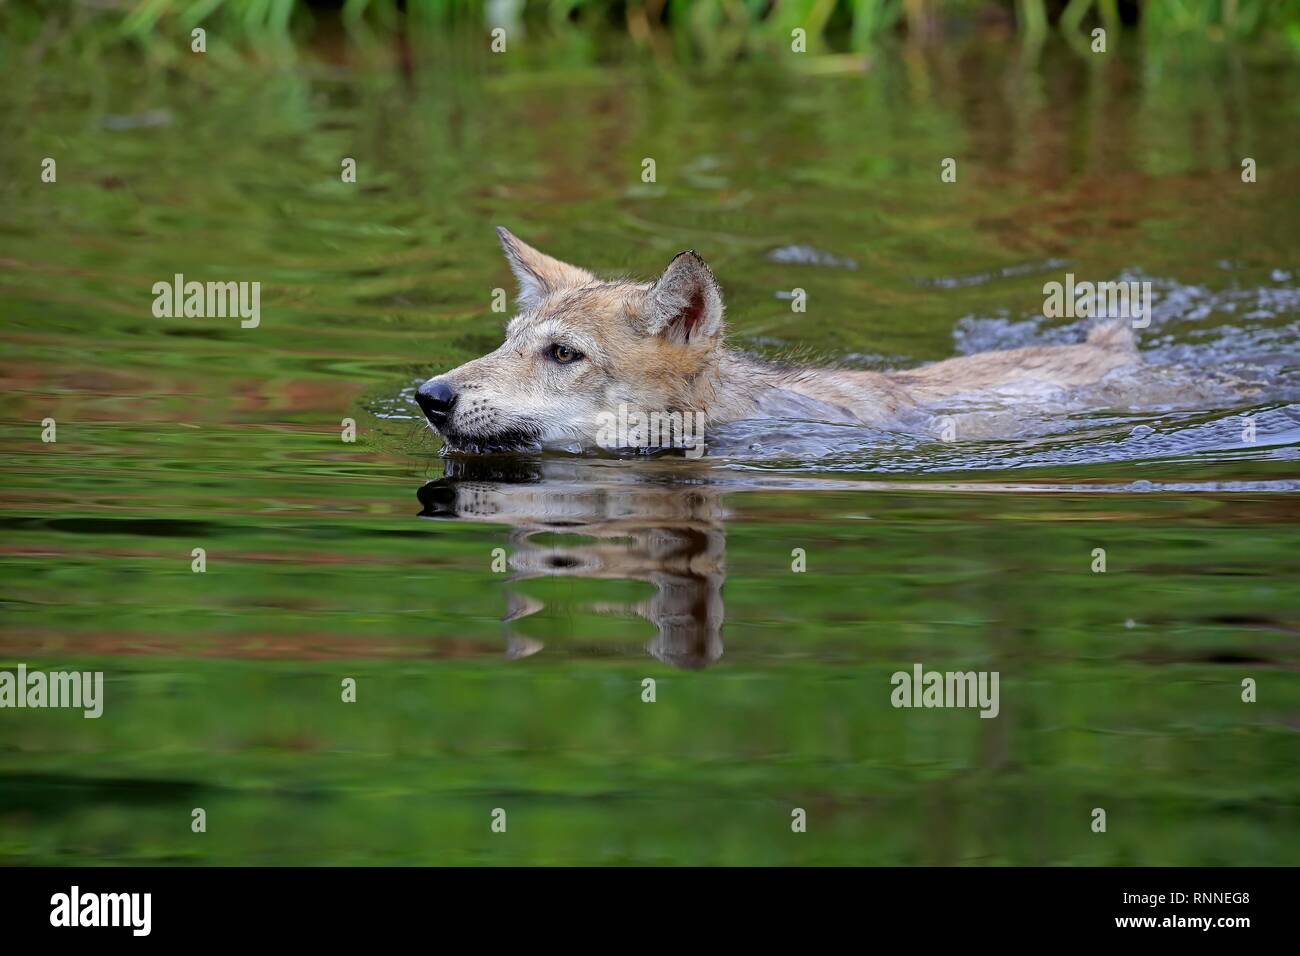 Lupo (Canis lupus), giovane animale nuotare in acqua, pino County, Minnesota, Stati Uniti d'America Foto Stock